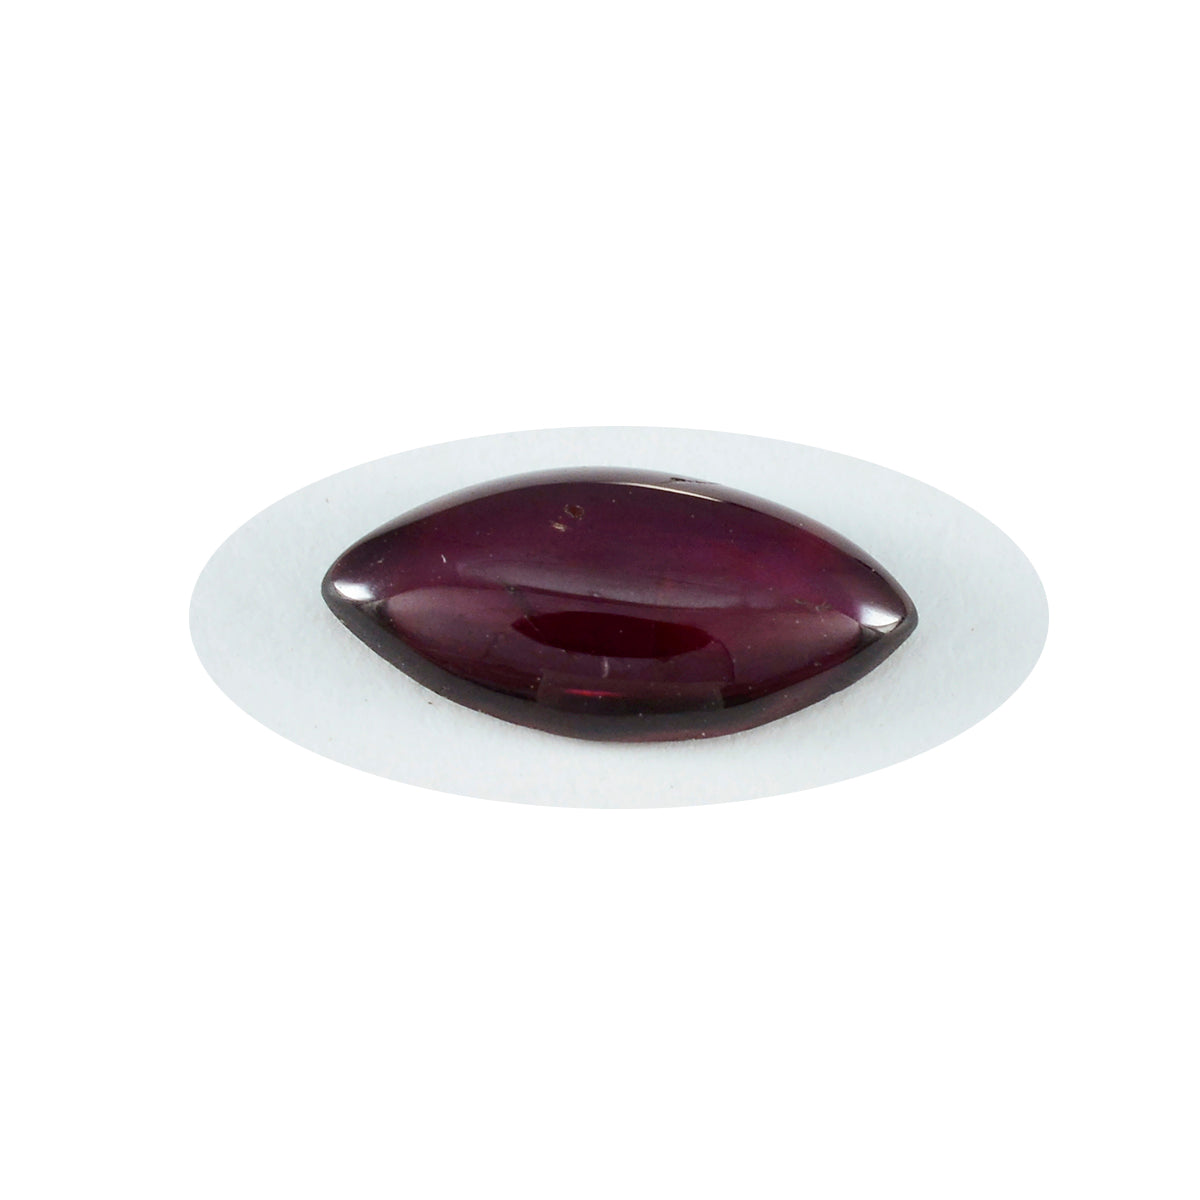 Riyogems 1 pieza cabujón de granate rojo 3x5 mm forma ovalada hermosa piedra preciosa de calidad